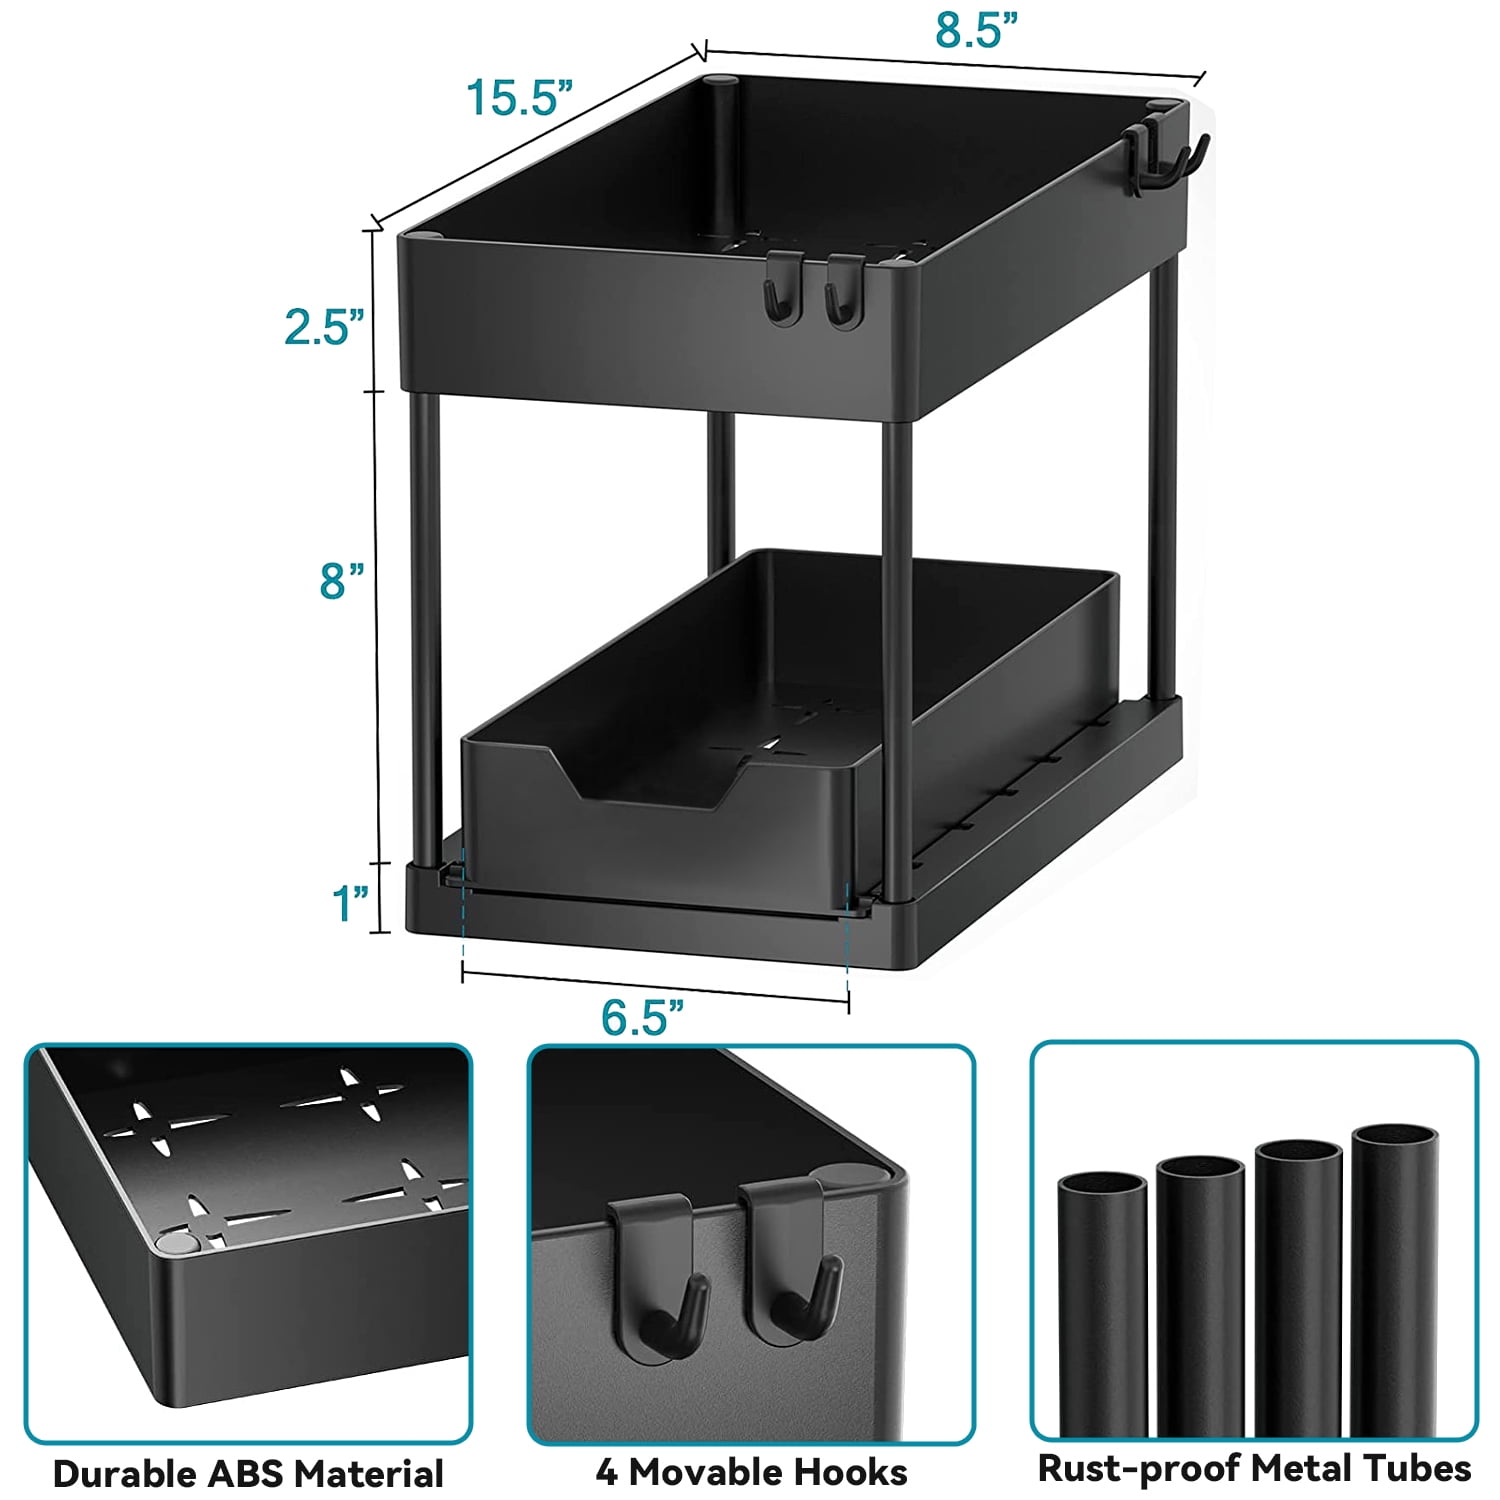 Storagebud 2-tier Sliding Under Sink Organizer - Black - 1 Pack : Target